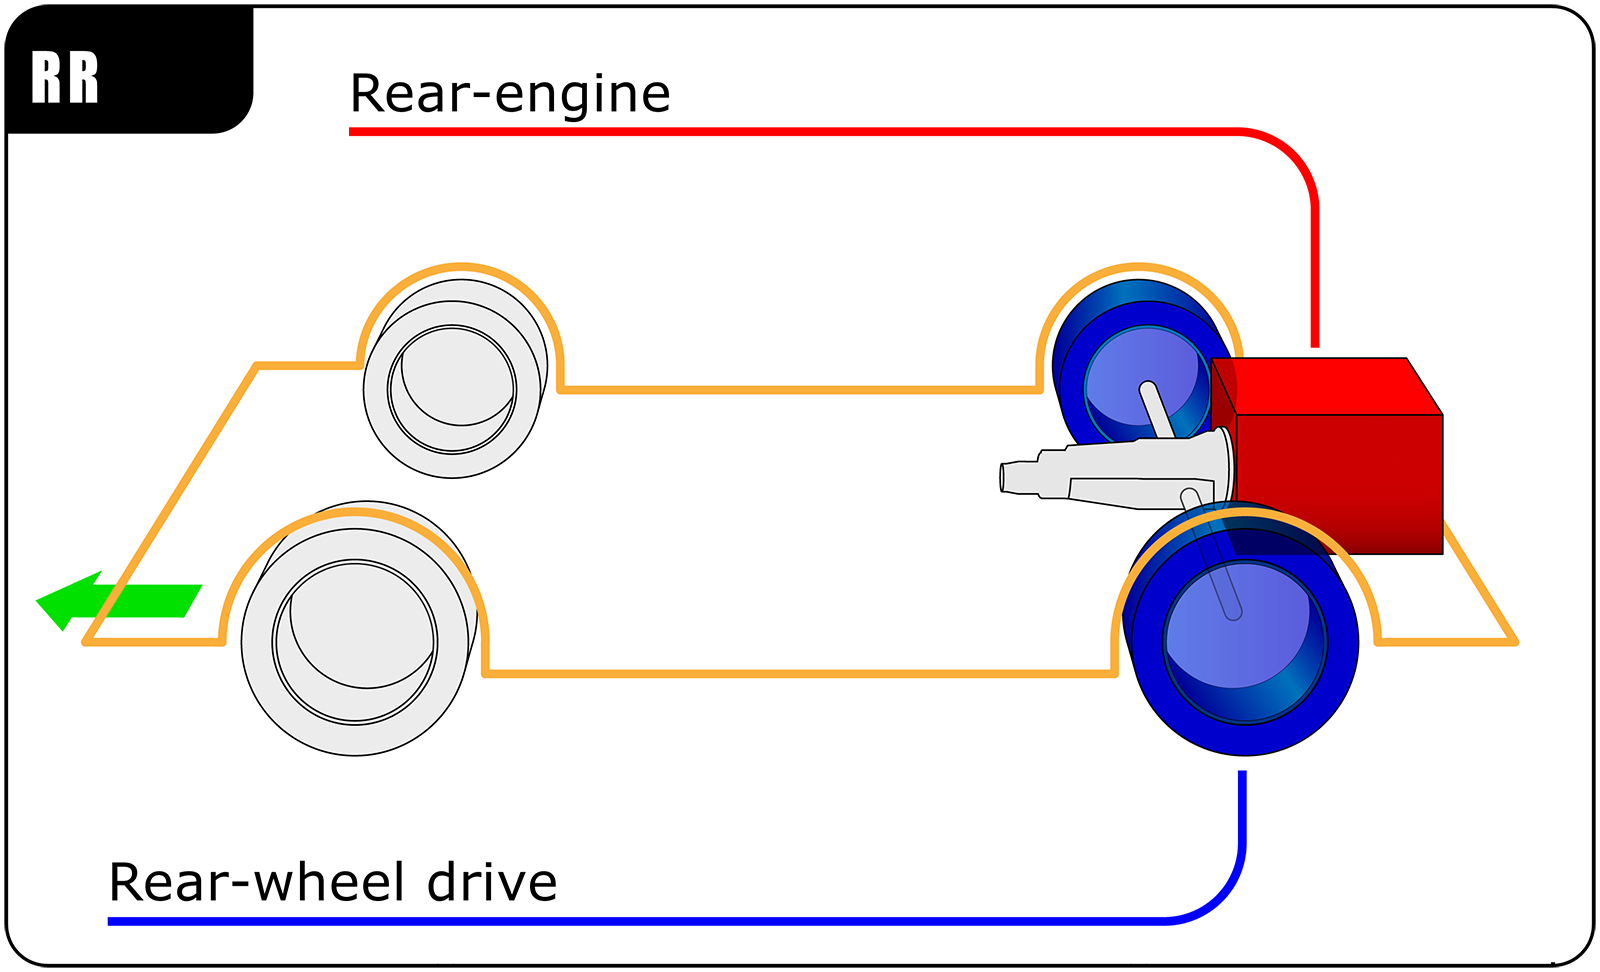 fwd vs awd rwd rear engine copy